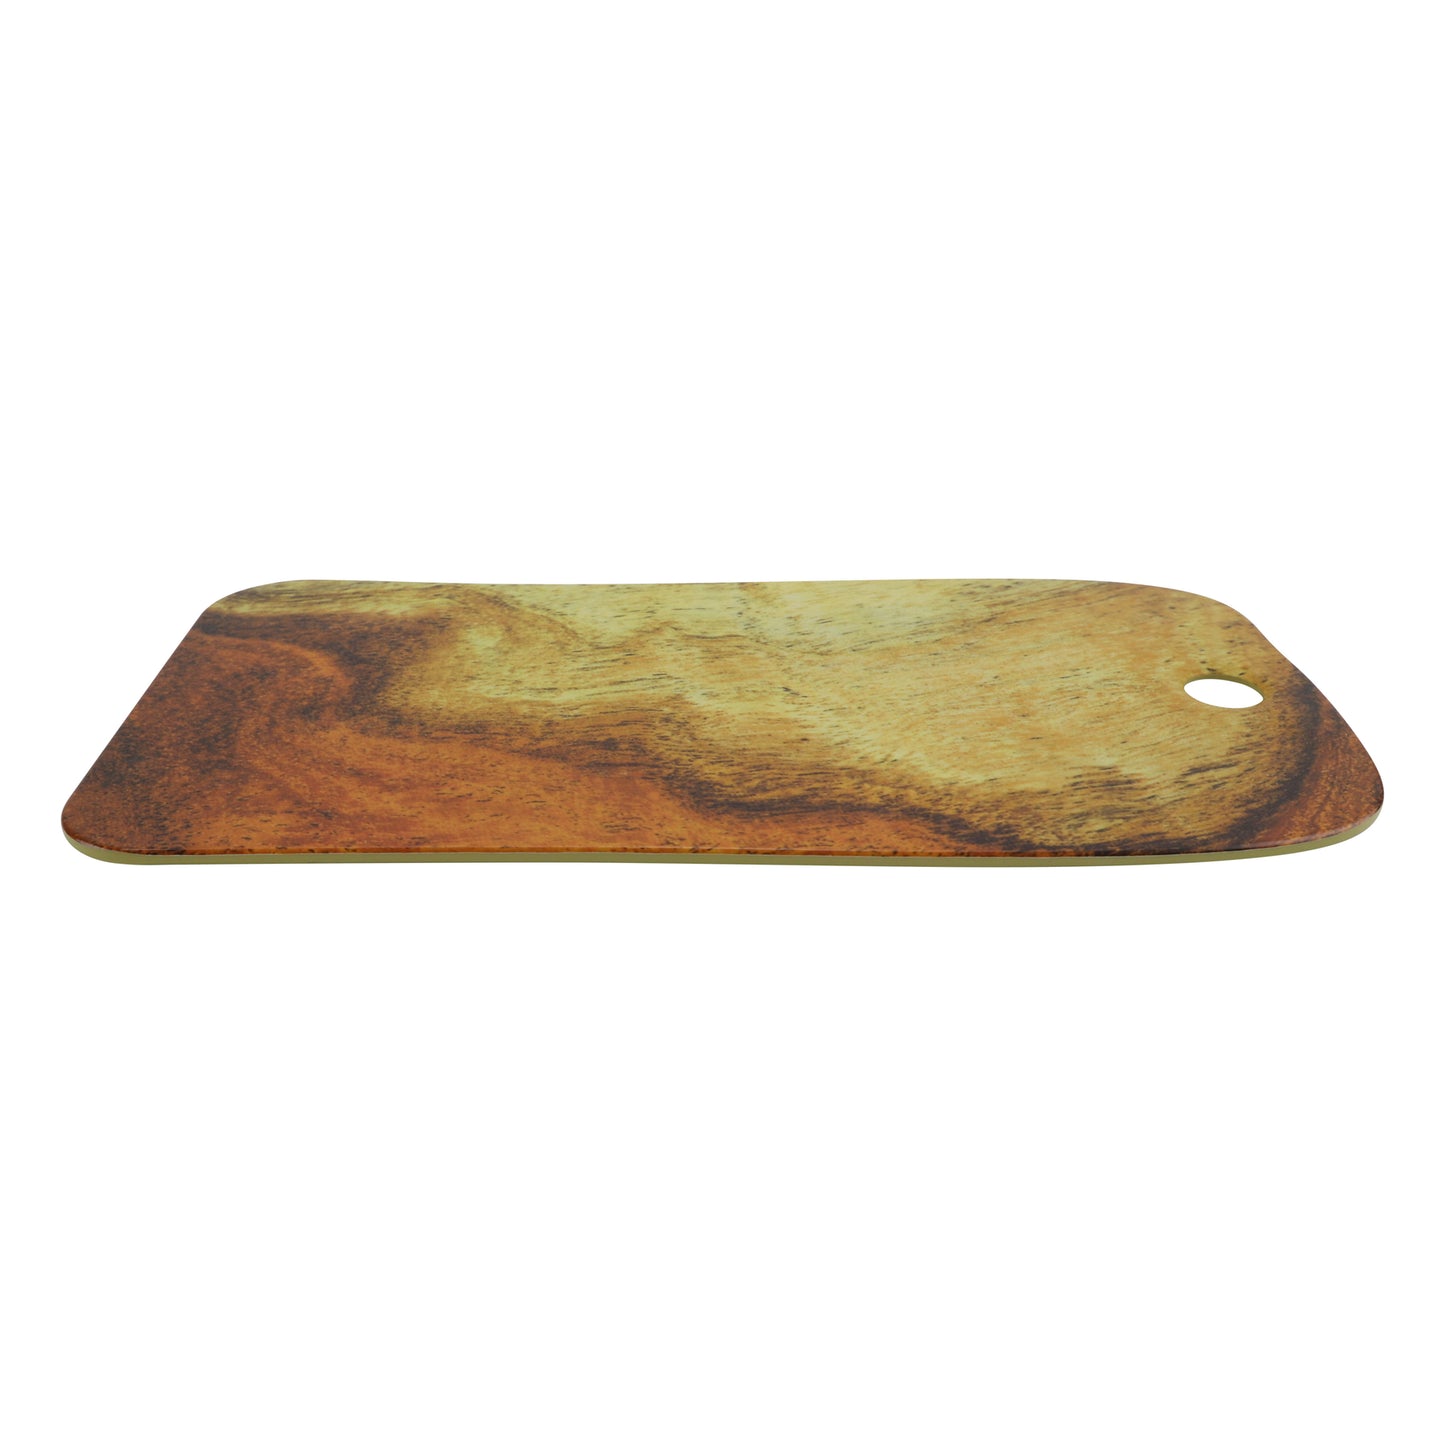 15" lapis mango wood melamine board (medium), 15"L x 8.75"W x .5"H, GET, cheforward